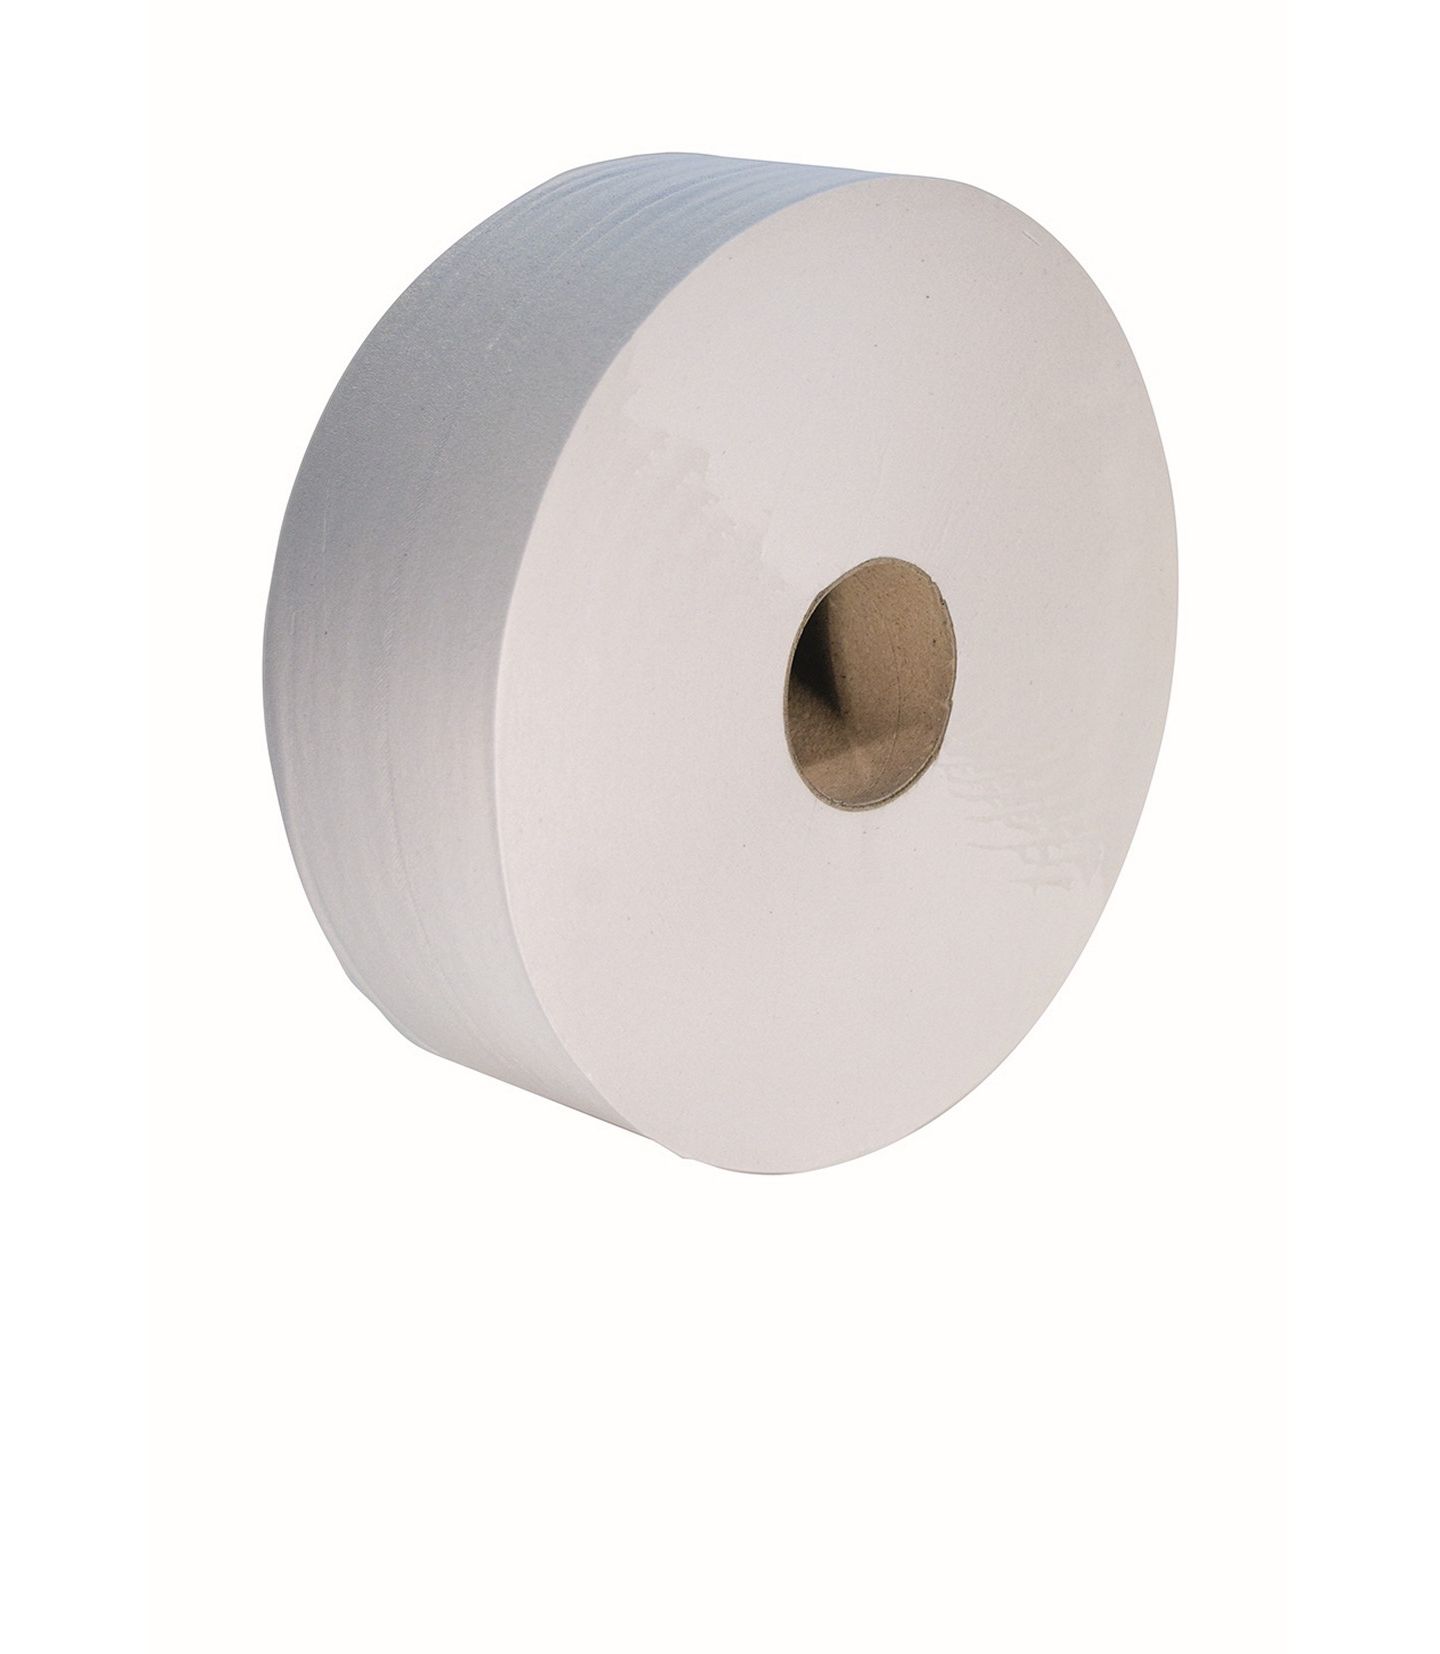 Maxi Jumbo Lot de 6 rouleaux de papier toilette